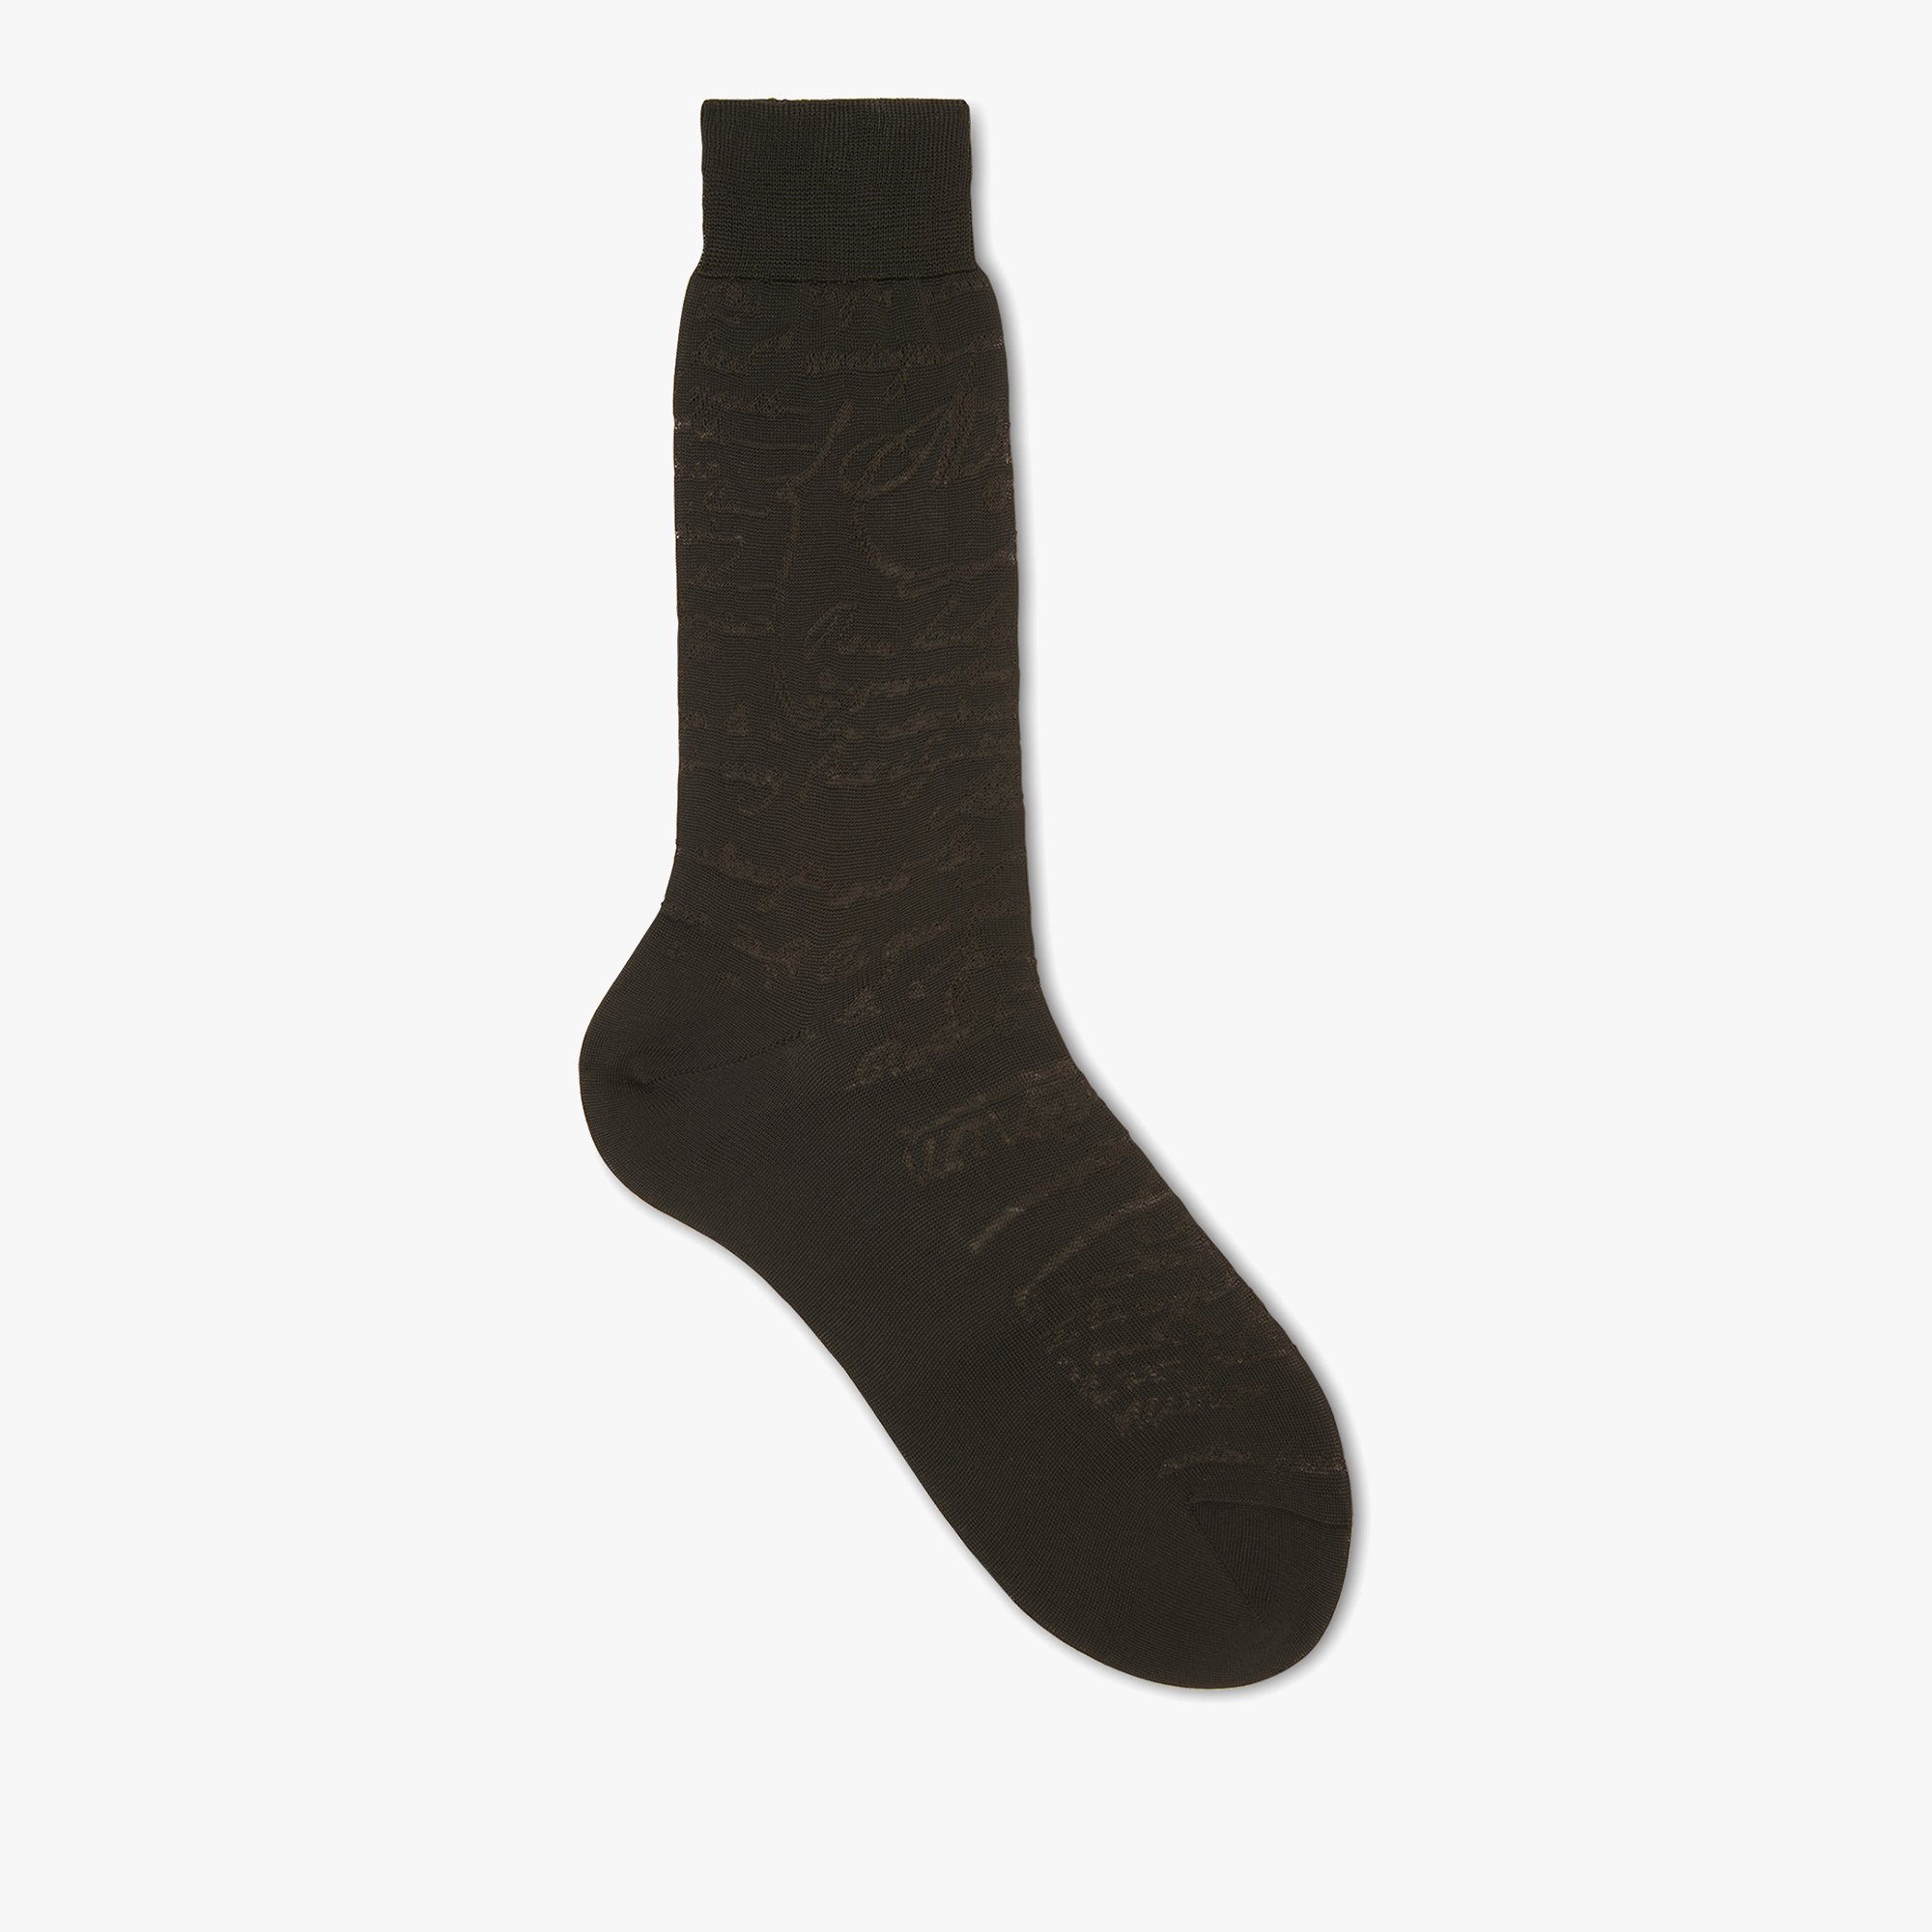 Cotton Scritto Socks, BLACK, hi-res